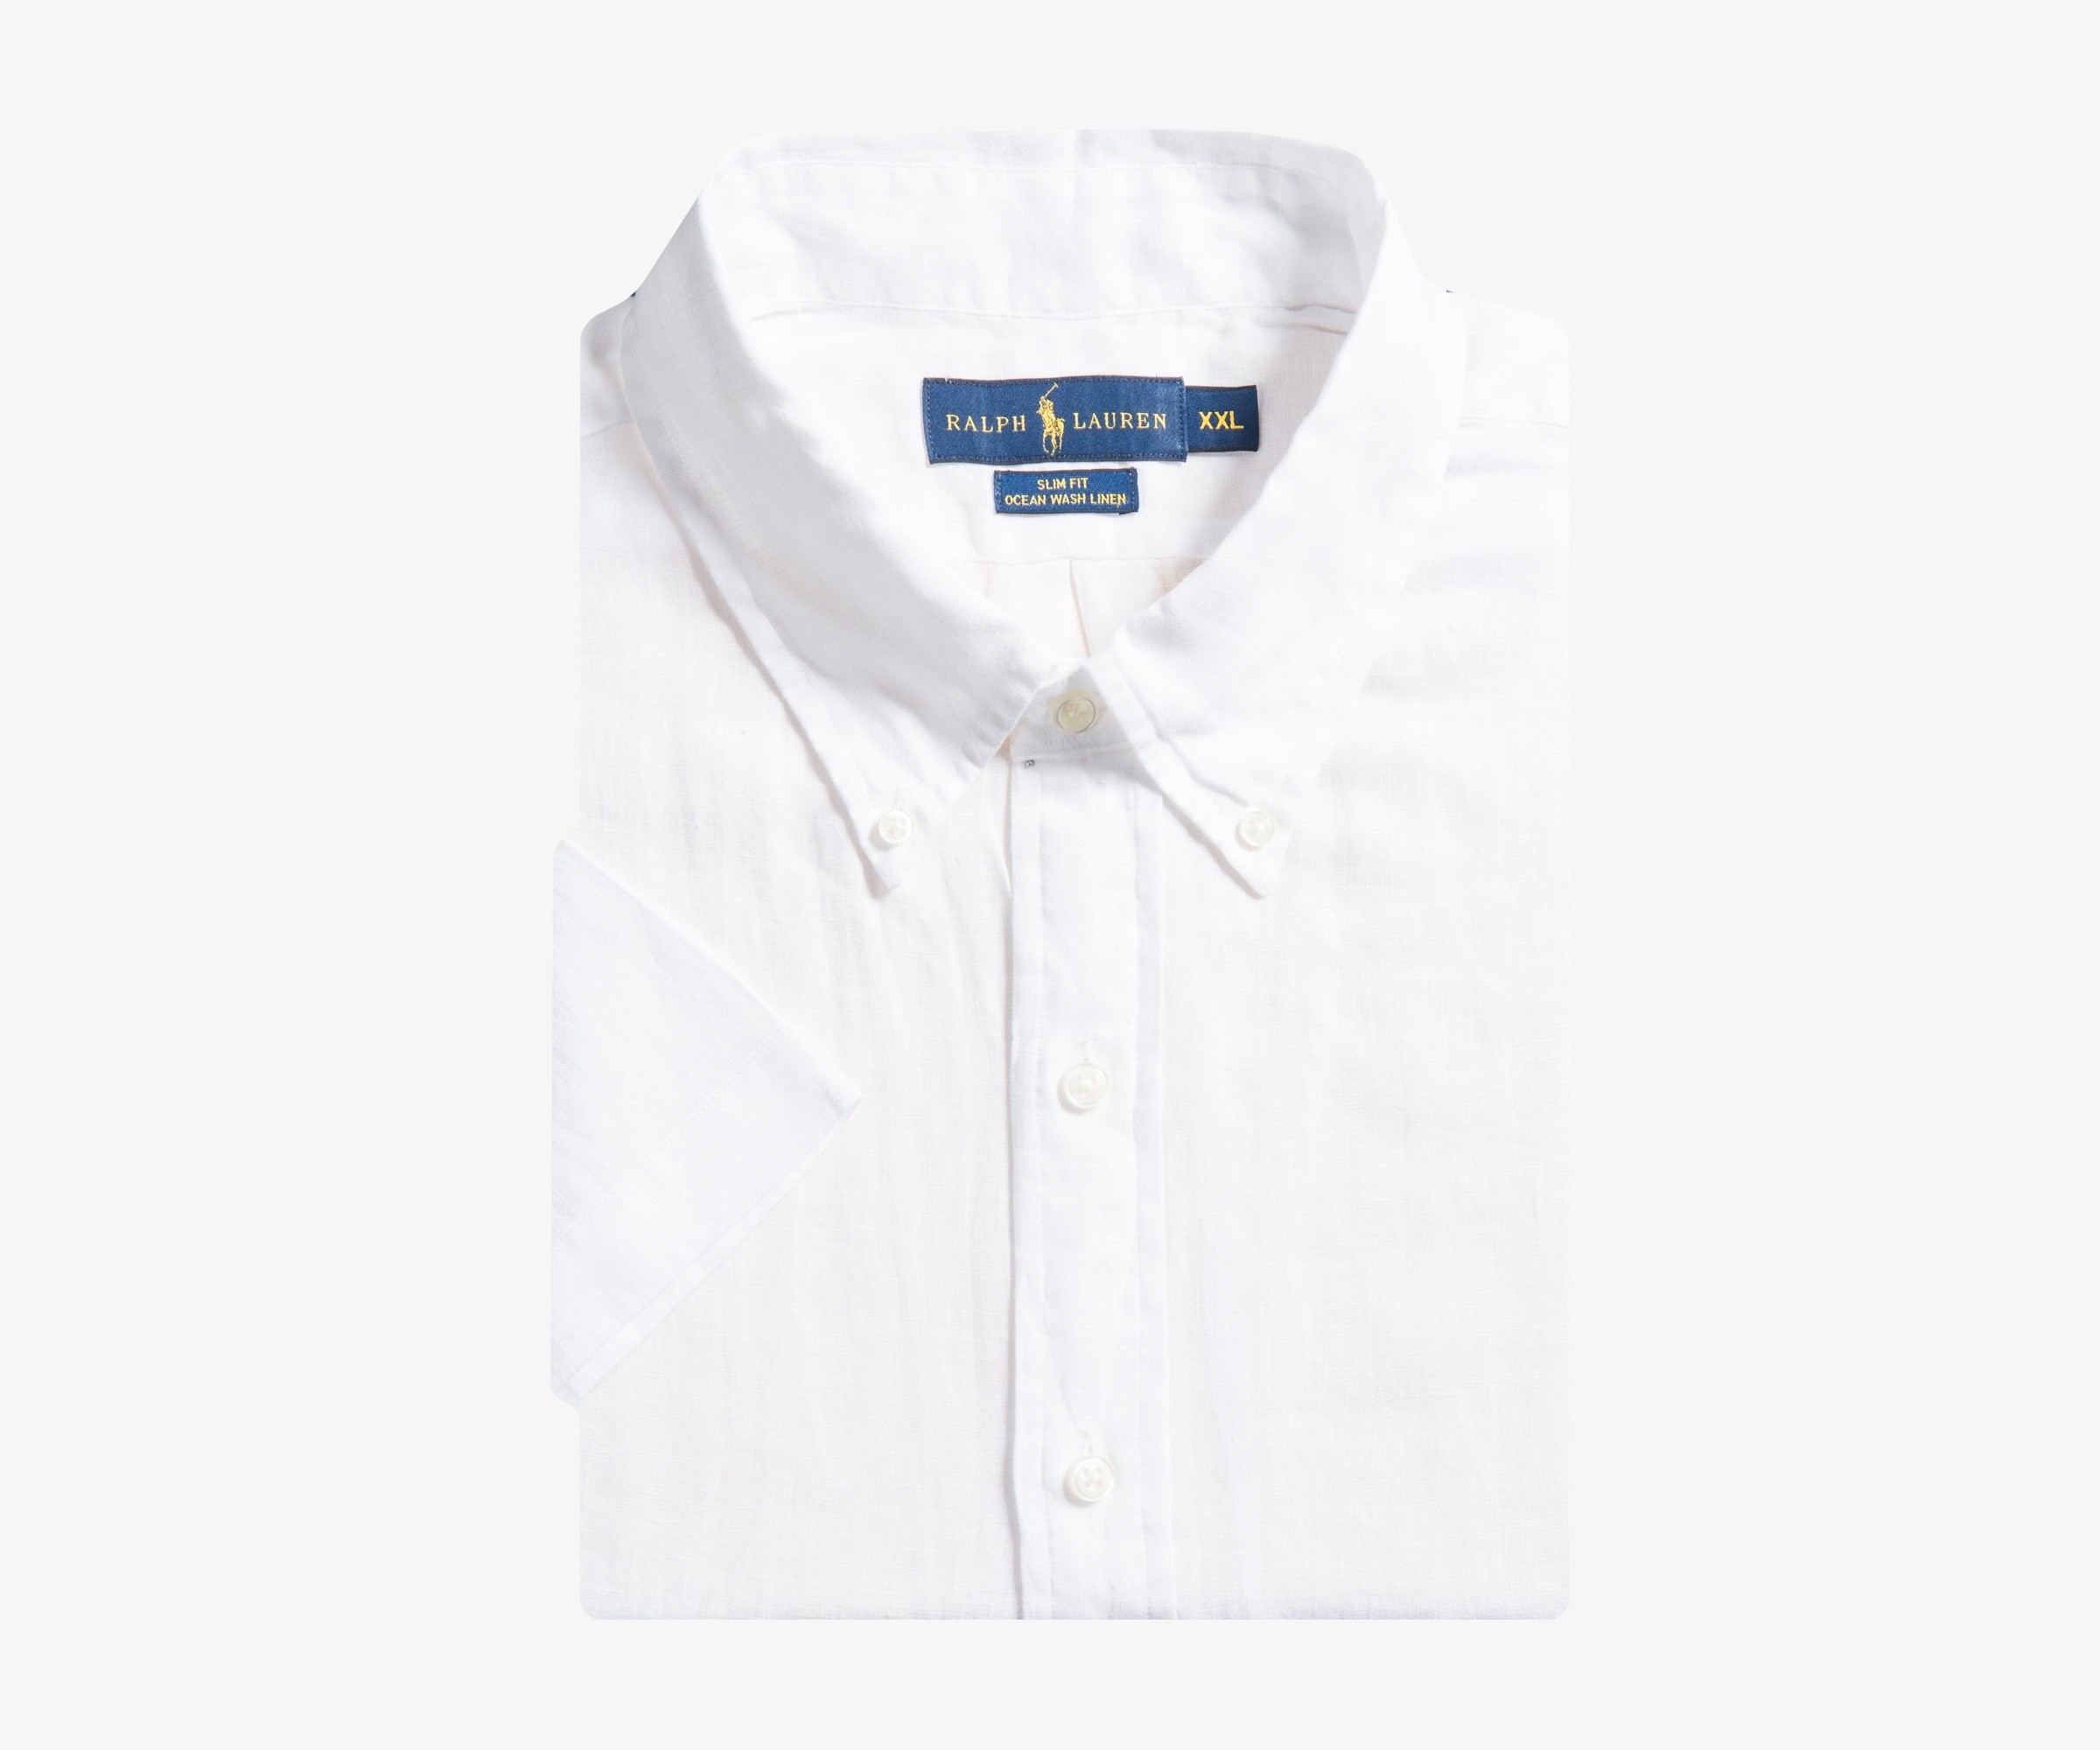 Polo Ralph Lauren Ocean Washed Linen Short Sleeve Shirt White